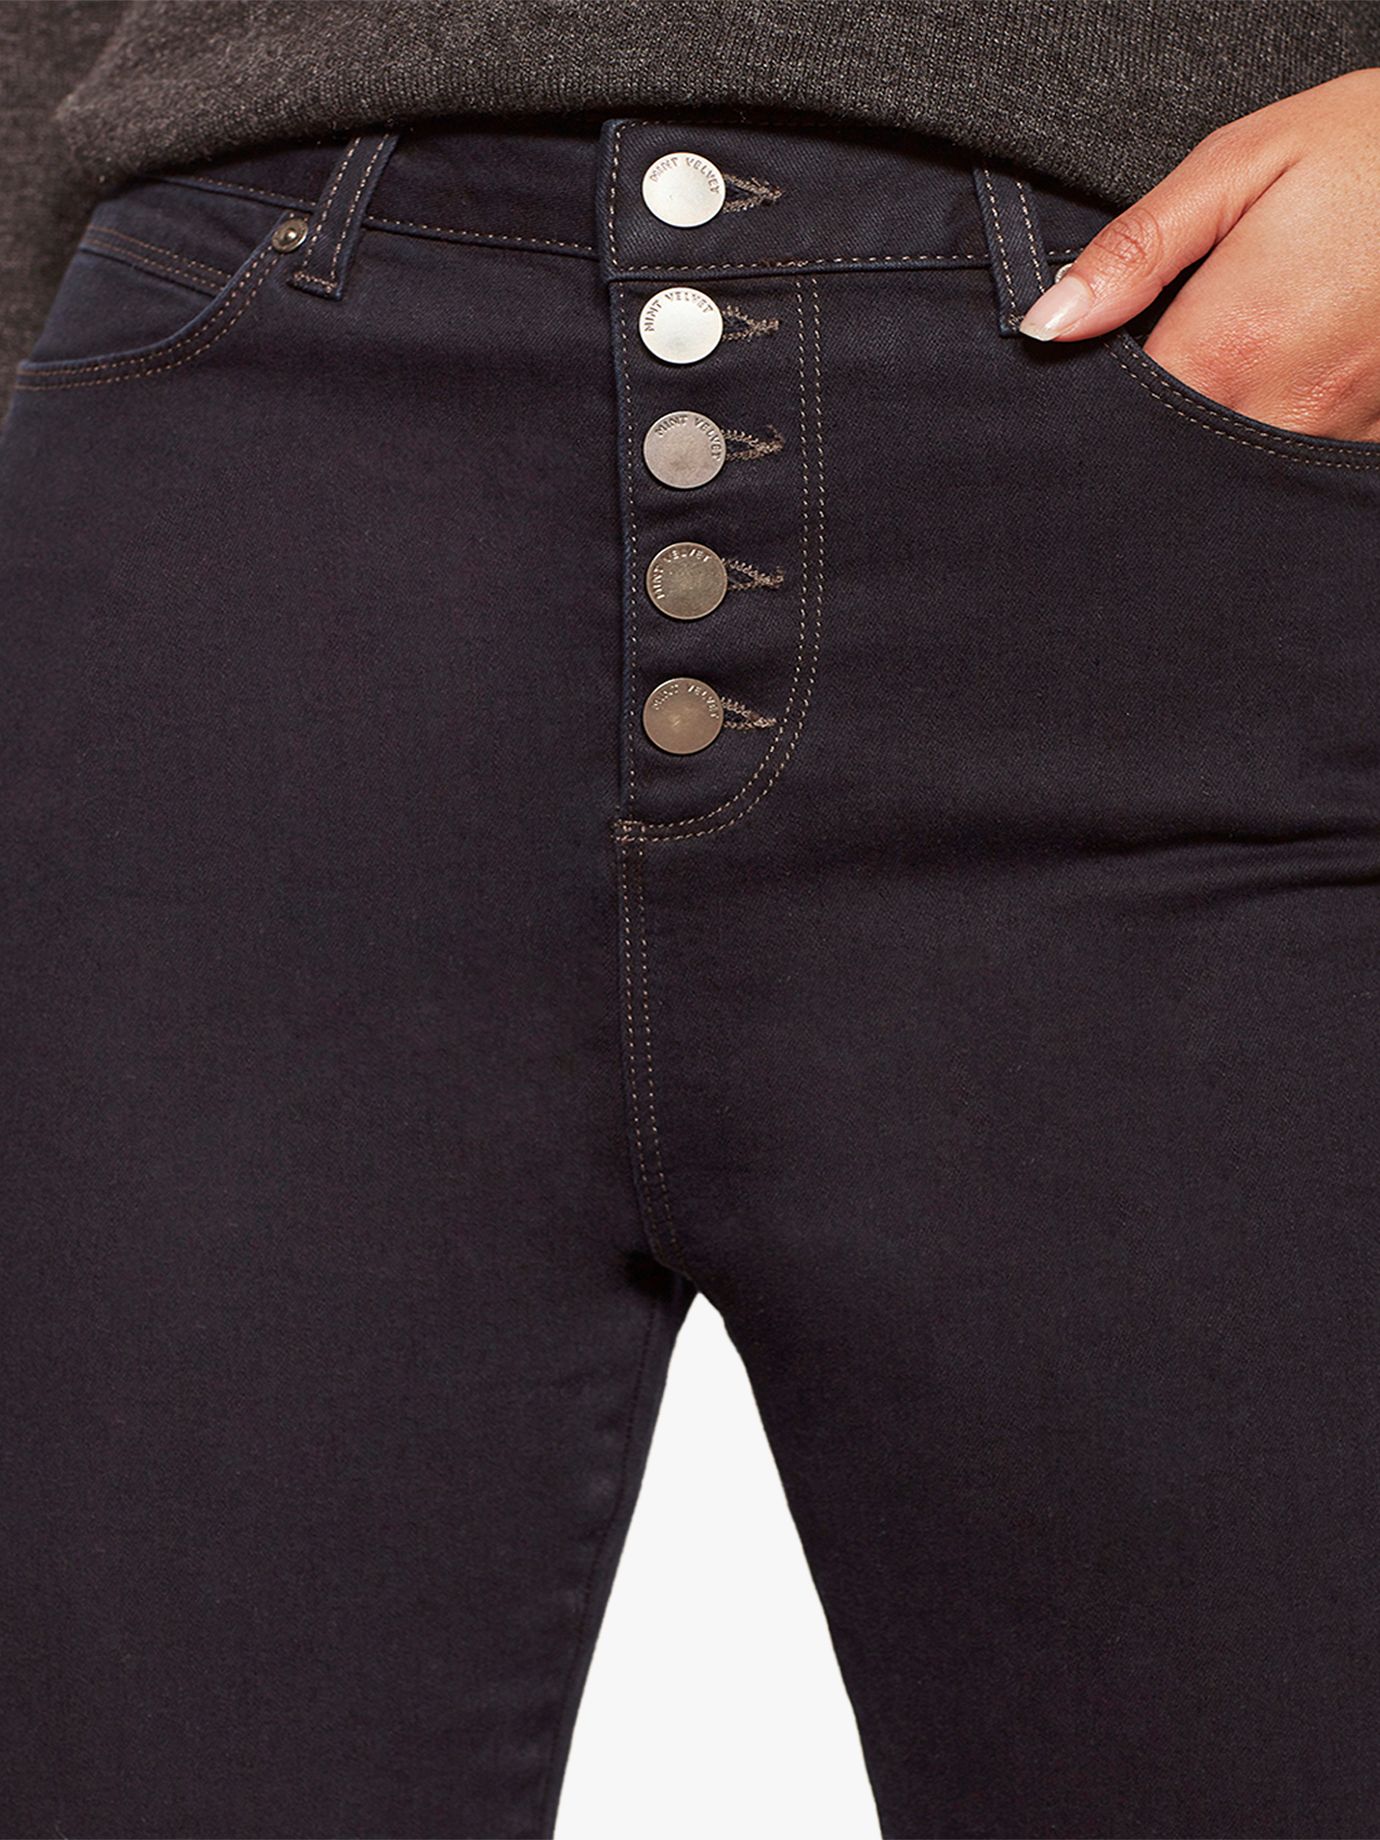 jeans pant button online